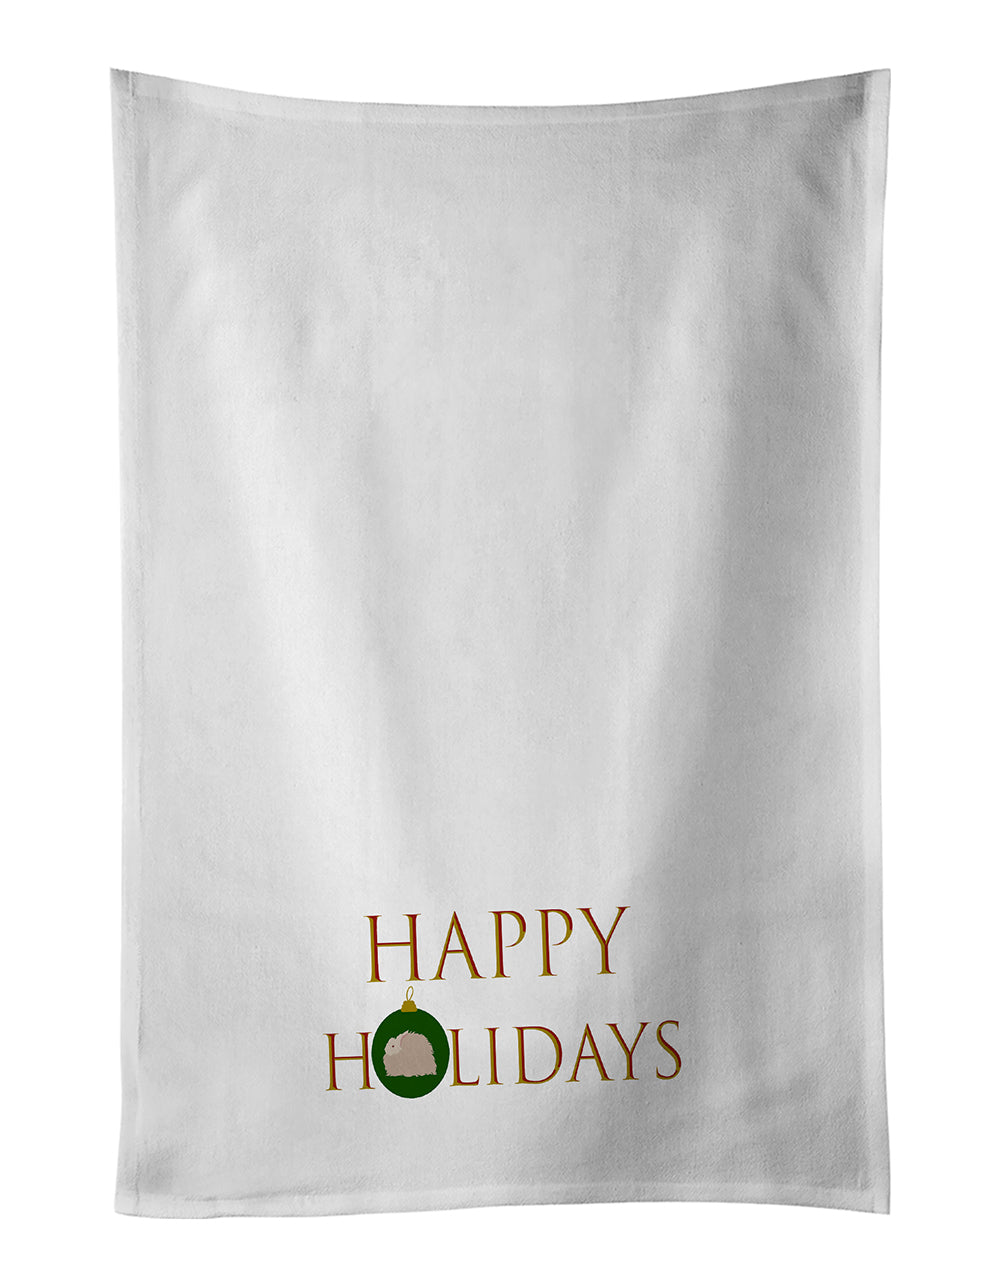 Buy this Rabbits - Fluffy Angora Rabbit Happy Holidays White Kitchen Towel Set of 2